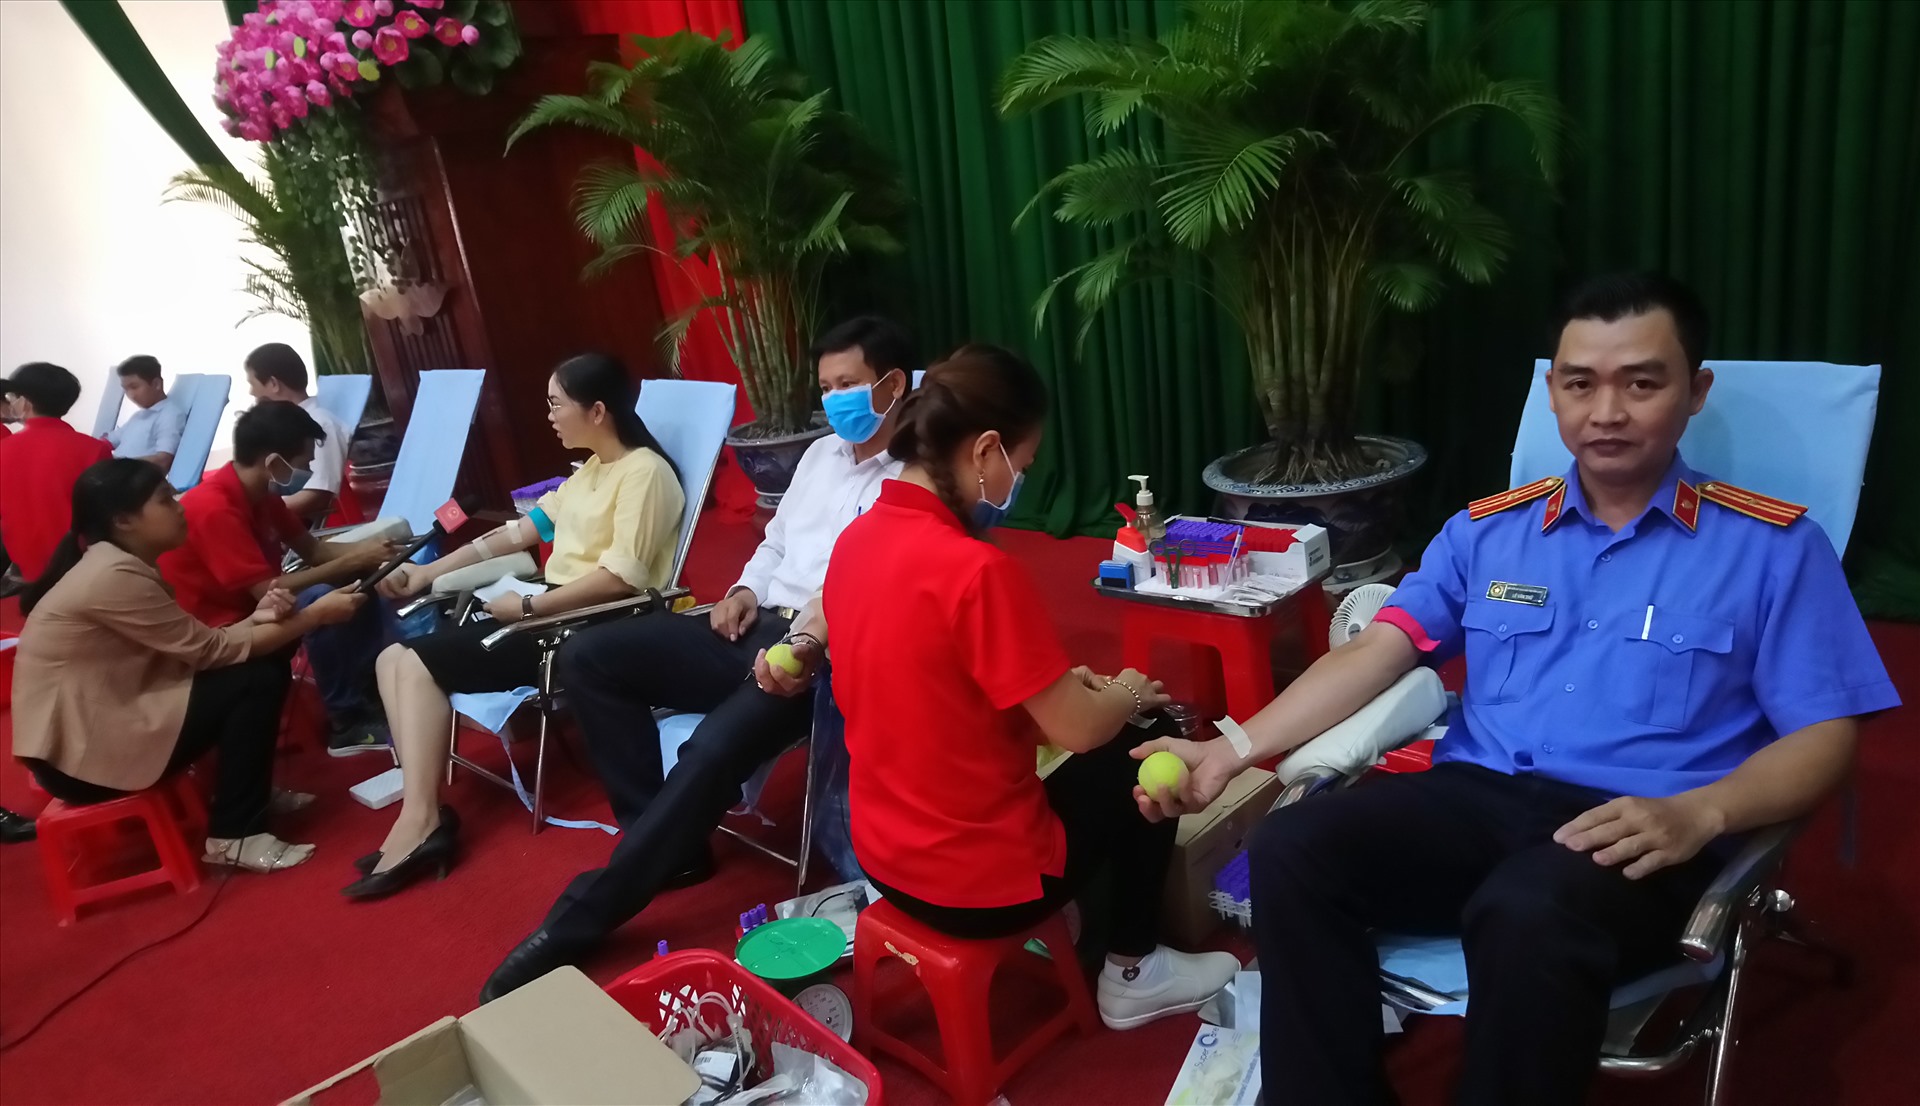 Lãnh đạo Tỉnh ủy, Ủy ban nhân dân và các ban ngành tỉnh cùng tham gia hiến máu tình nguyện. Ảnh: Thanh Thủy